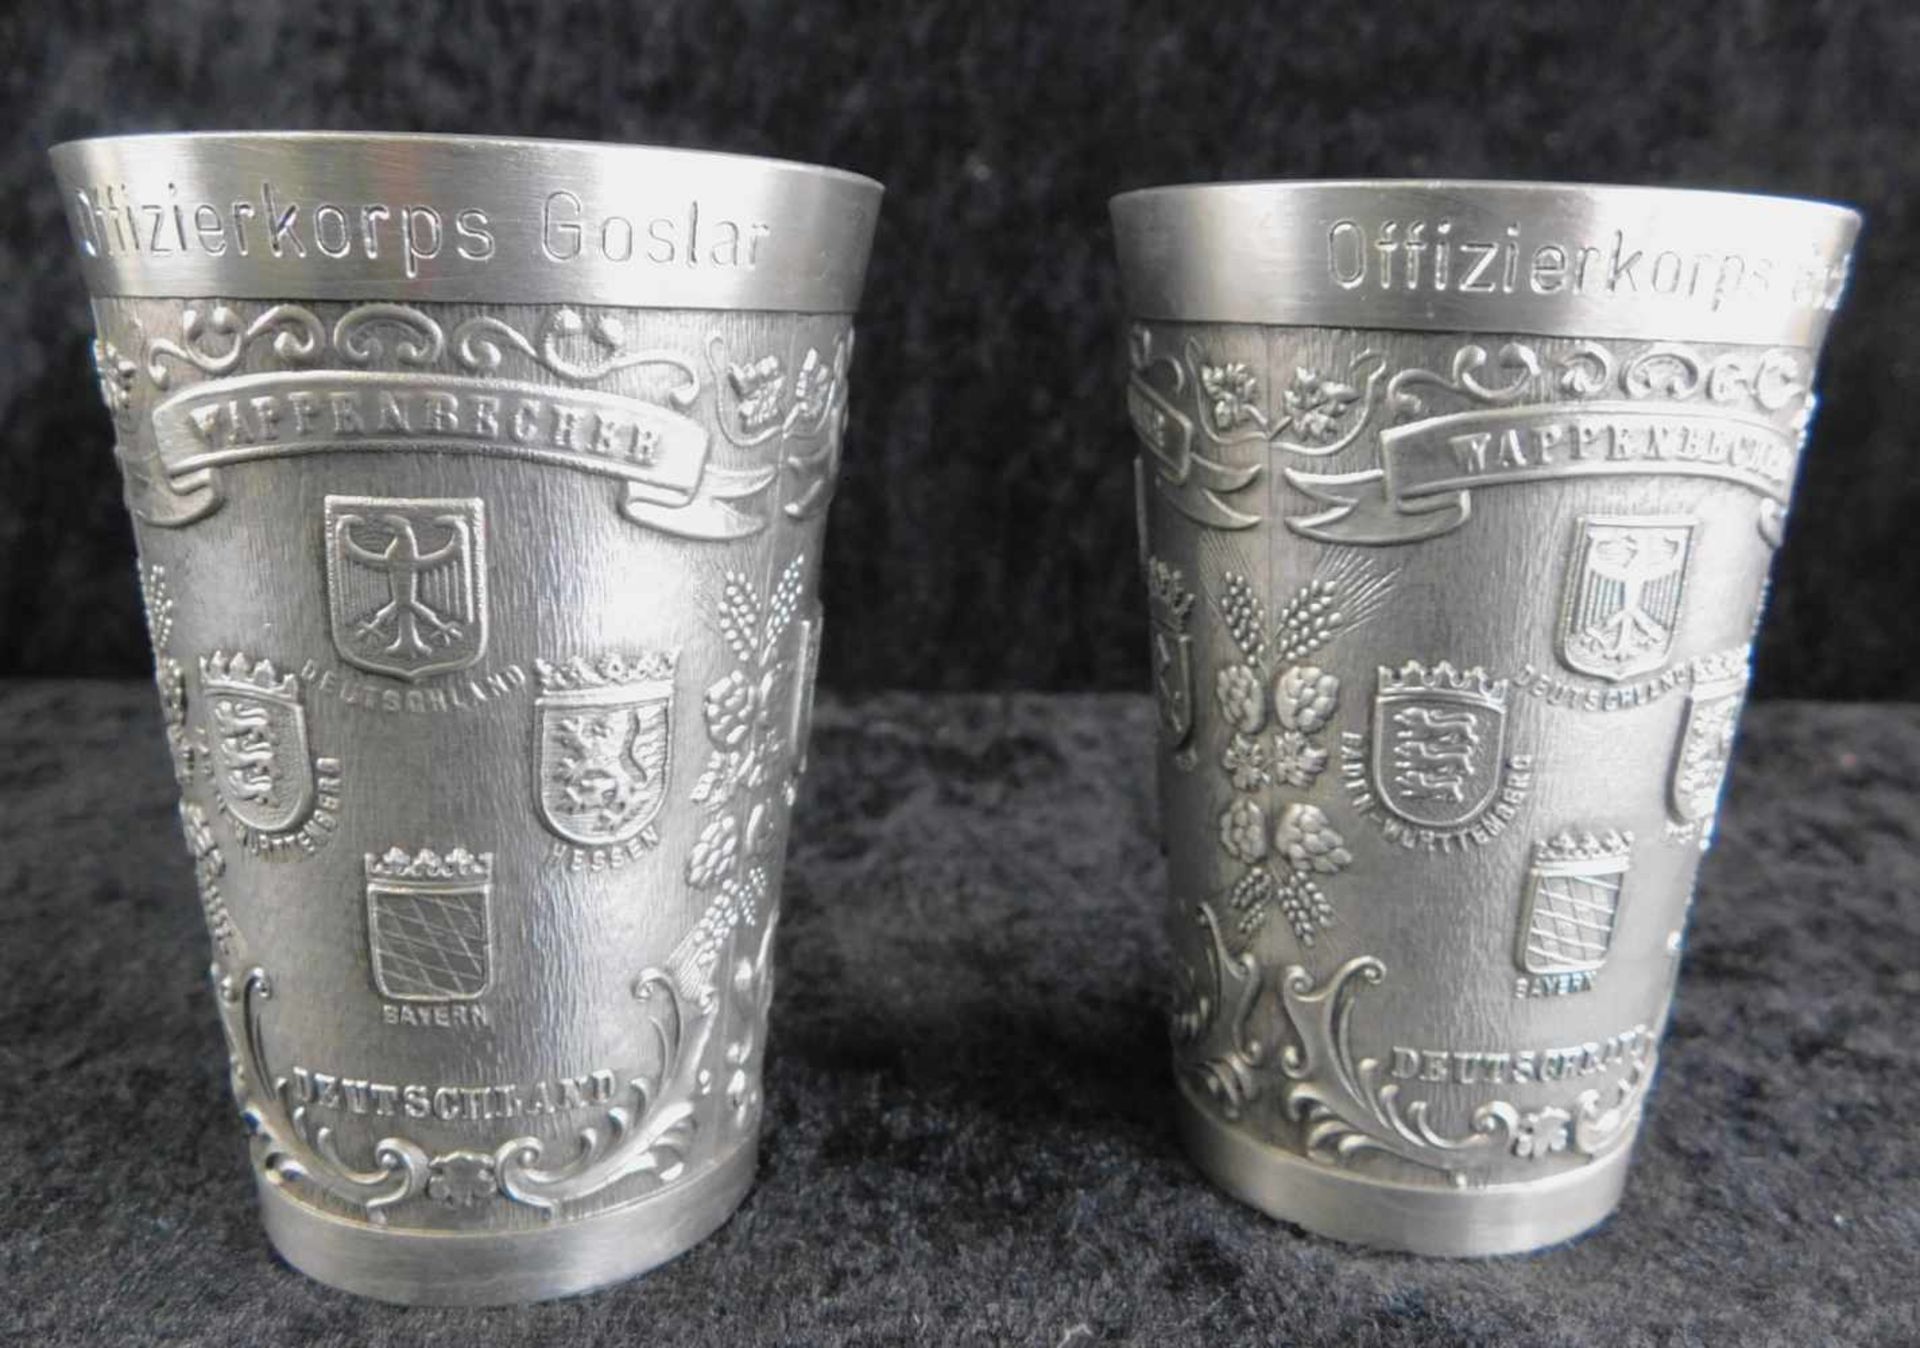 2 Wappenbecher, Zinn Punze u.a. Brenningloh,, Gravur Offizierskorps Goslar 1989 und 1990, Höhe 8,5